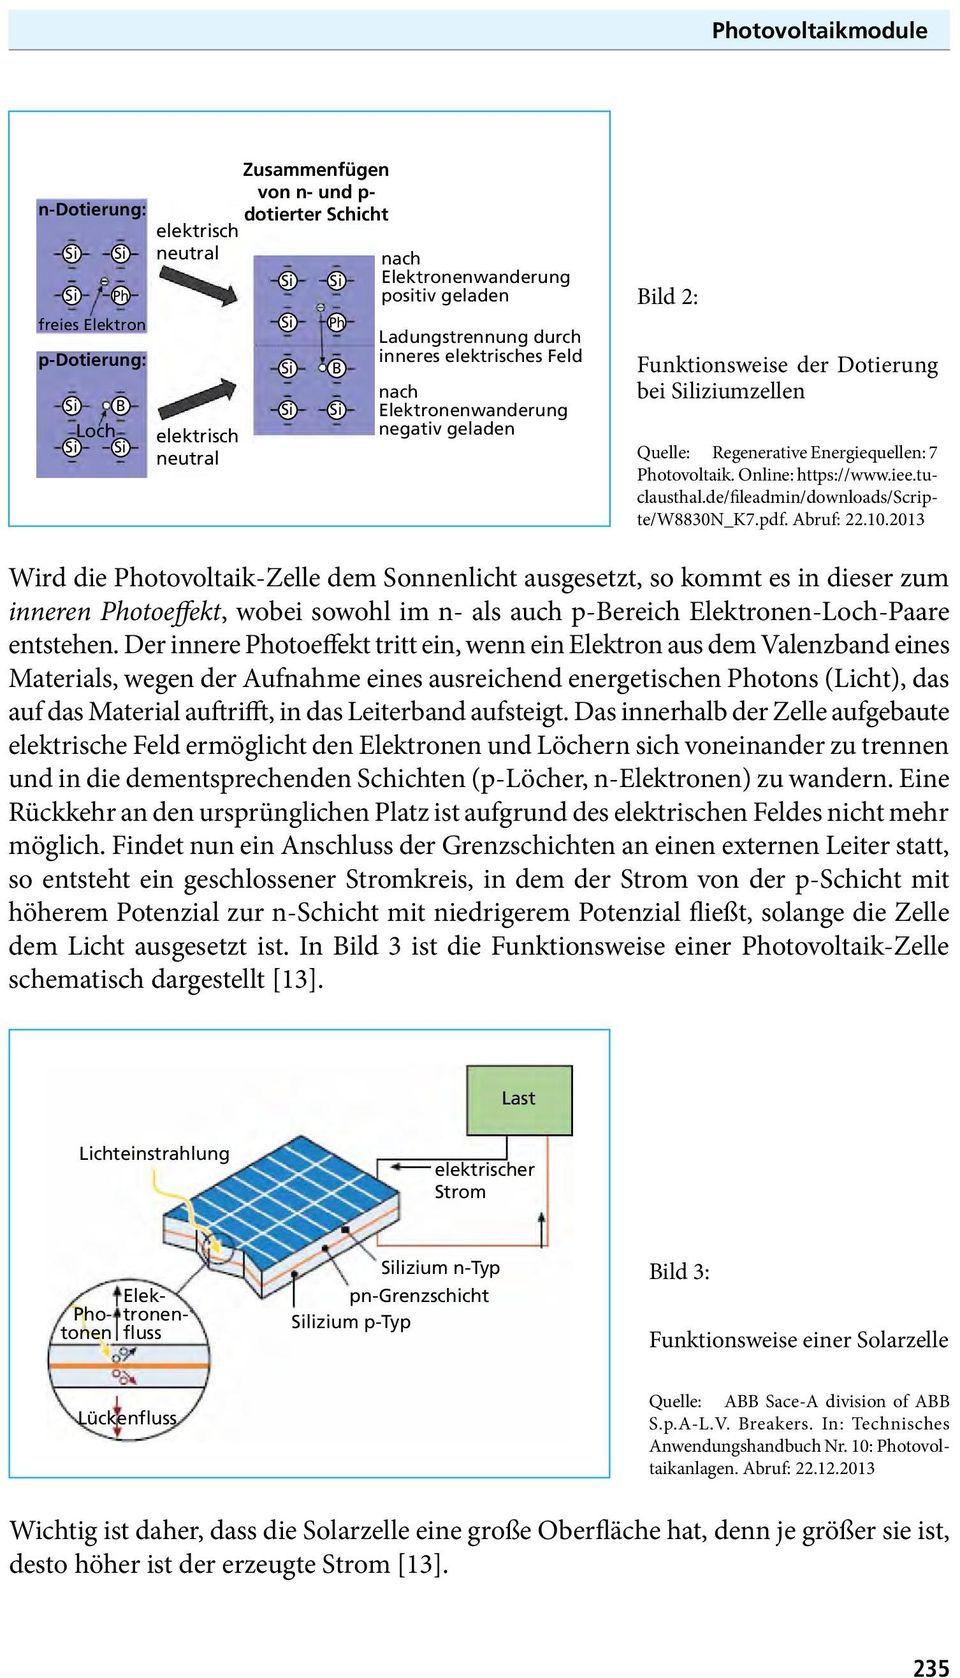 Regenerative Energiequellen: 7 Photovoltaik. Online: https://www.iee.tuclausthal.de/fileadmin/downloads/scripte/w8830n_k7.pdf. Abruf: 22.10.